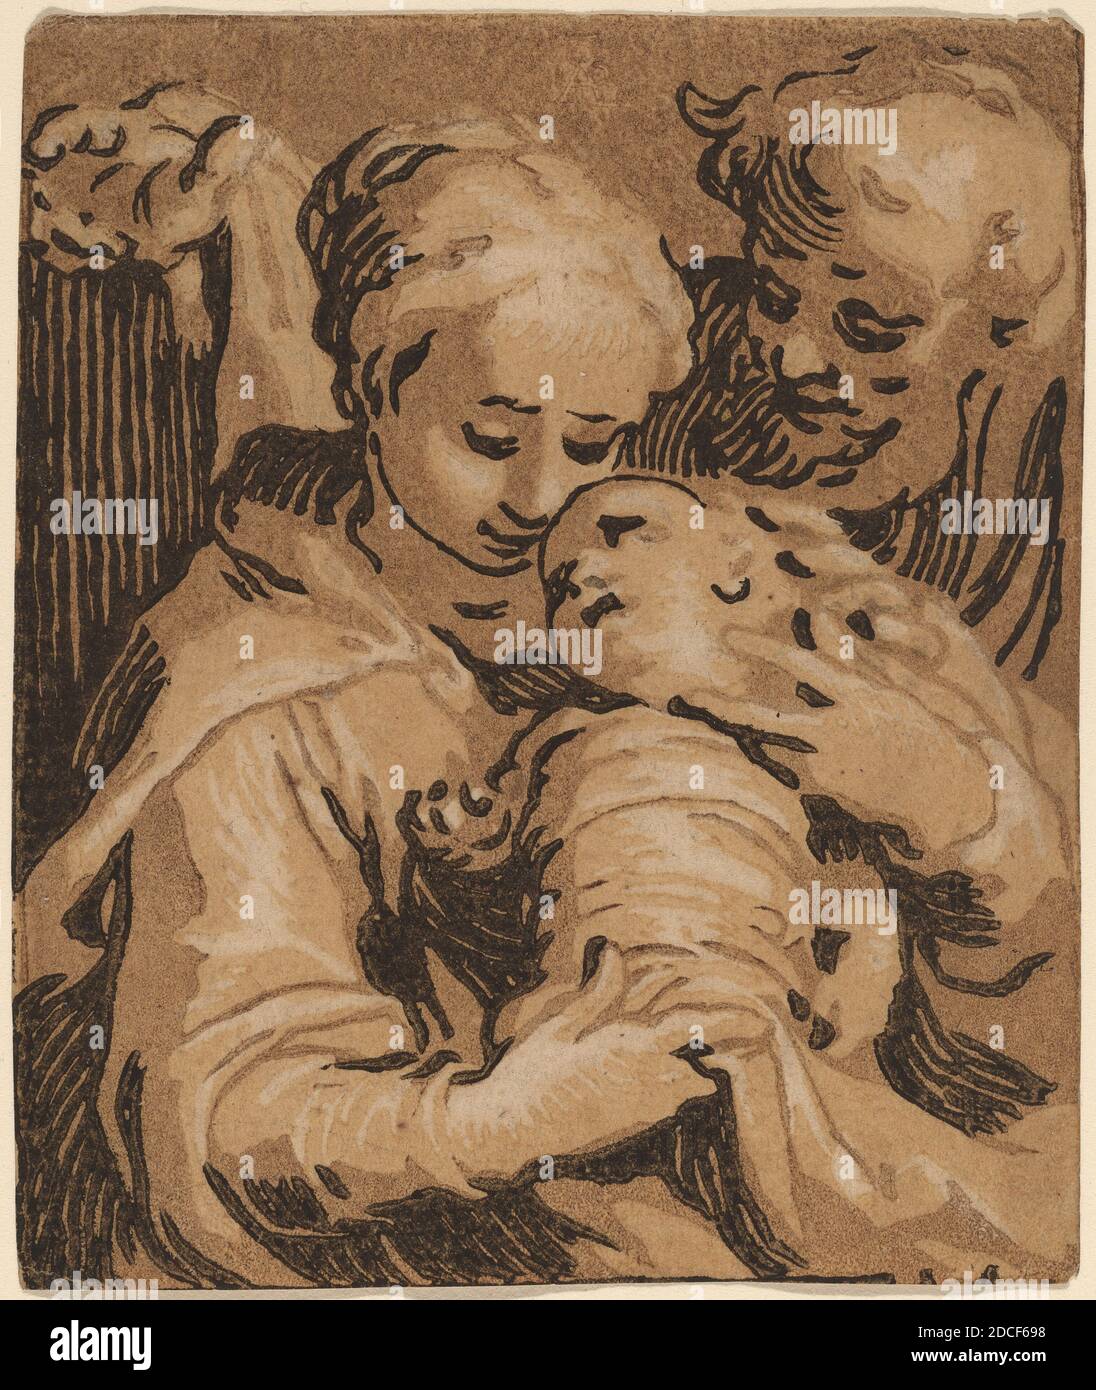 Abraham Bloemaert, (Künstler), Niederländisch, 1566 - 1651, die Heilige Familie, Holzschnitt in Chiaroscuro, Blatt: 9 x 7.6 cm (3 9/16 x 3 Zoll Stockfoto